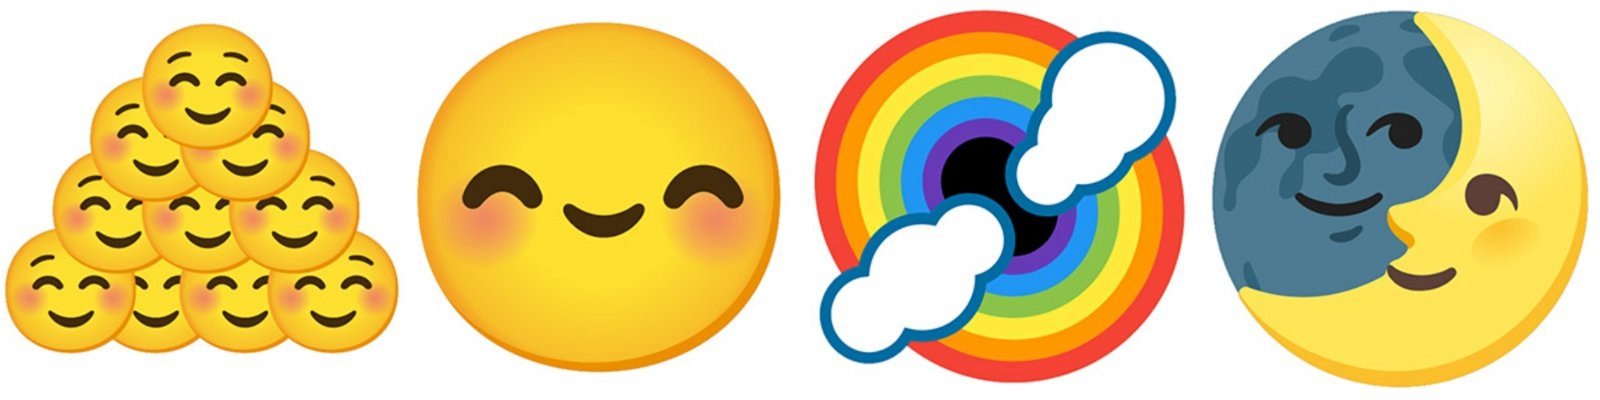 emojis combinados de Gboard tiernos